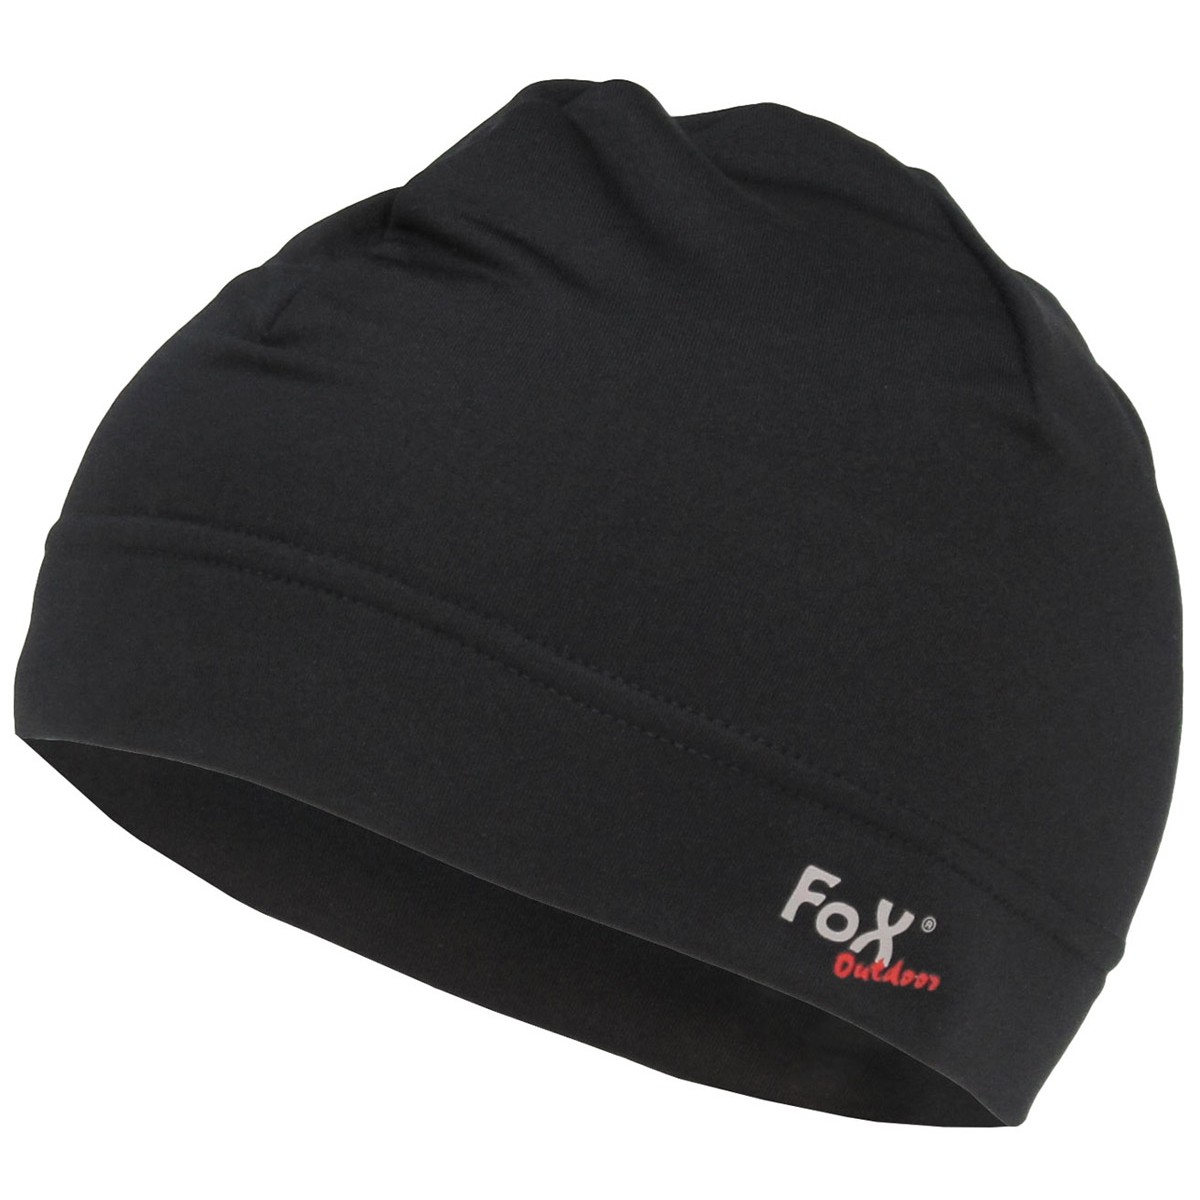 Čepice softshellová FoX Run - černá, L/XL